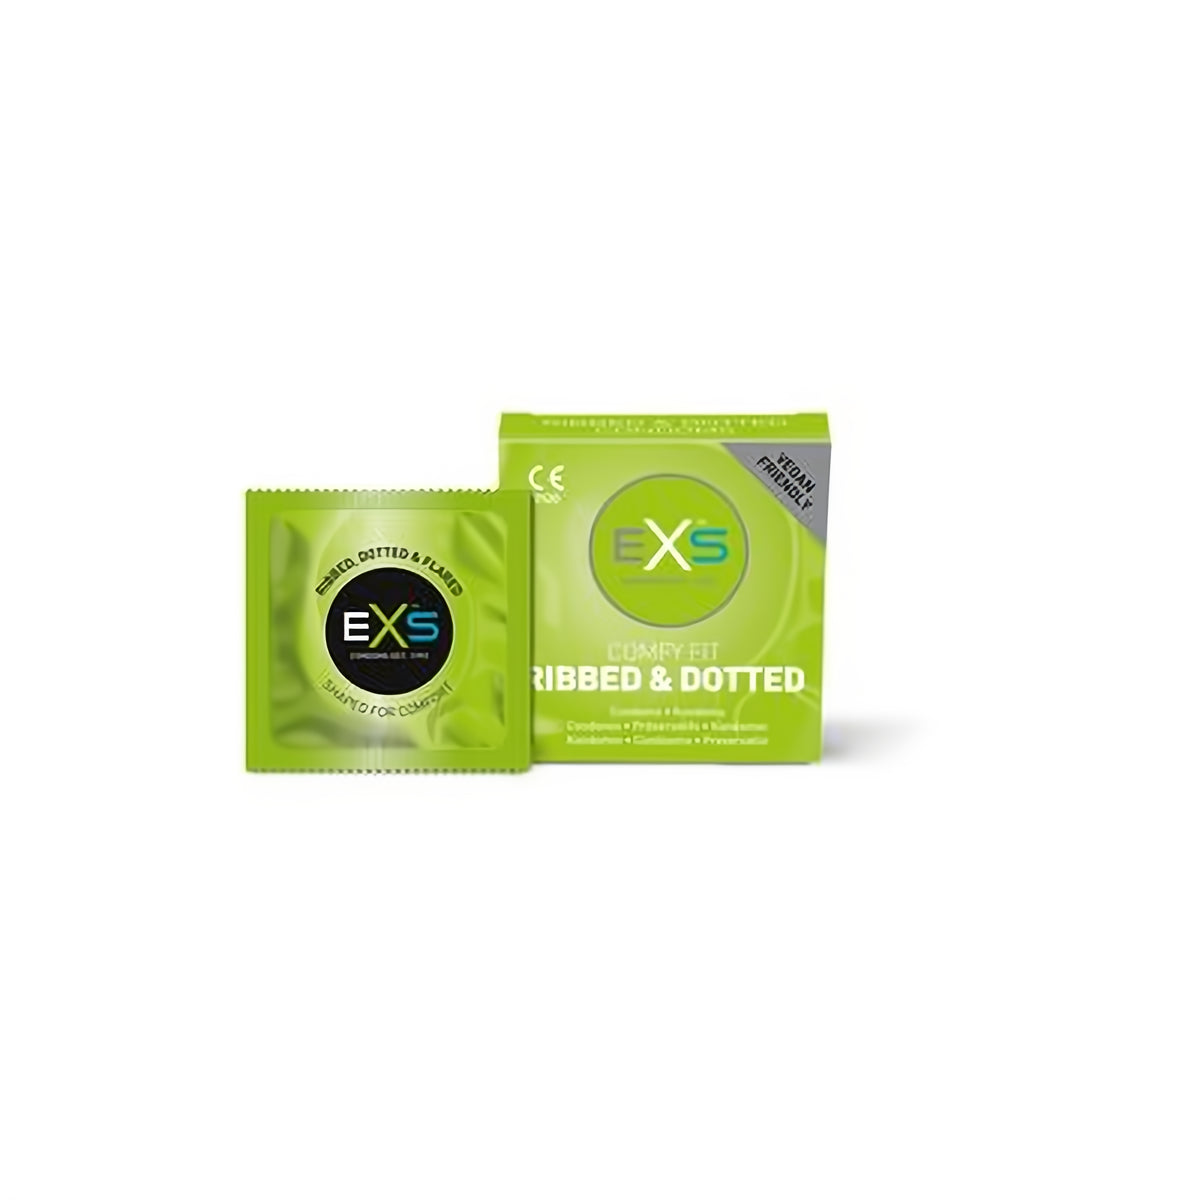 EXS Ribbed Dotted and Flared - Condoms - 3 Pieces - EroticToyzProducten,Veilige Seks, Verzorging Hulp,Veilige Seks,Condooms voor Mannen,,MannelijkEXS